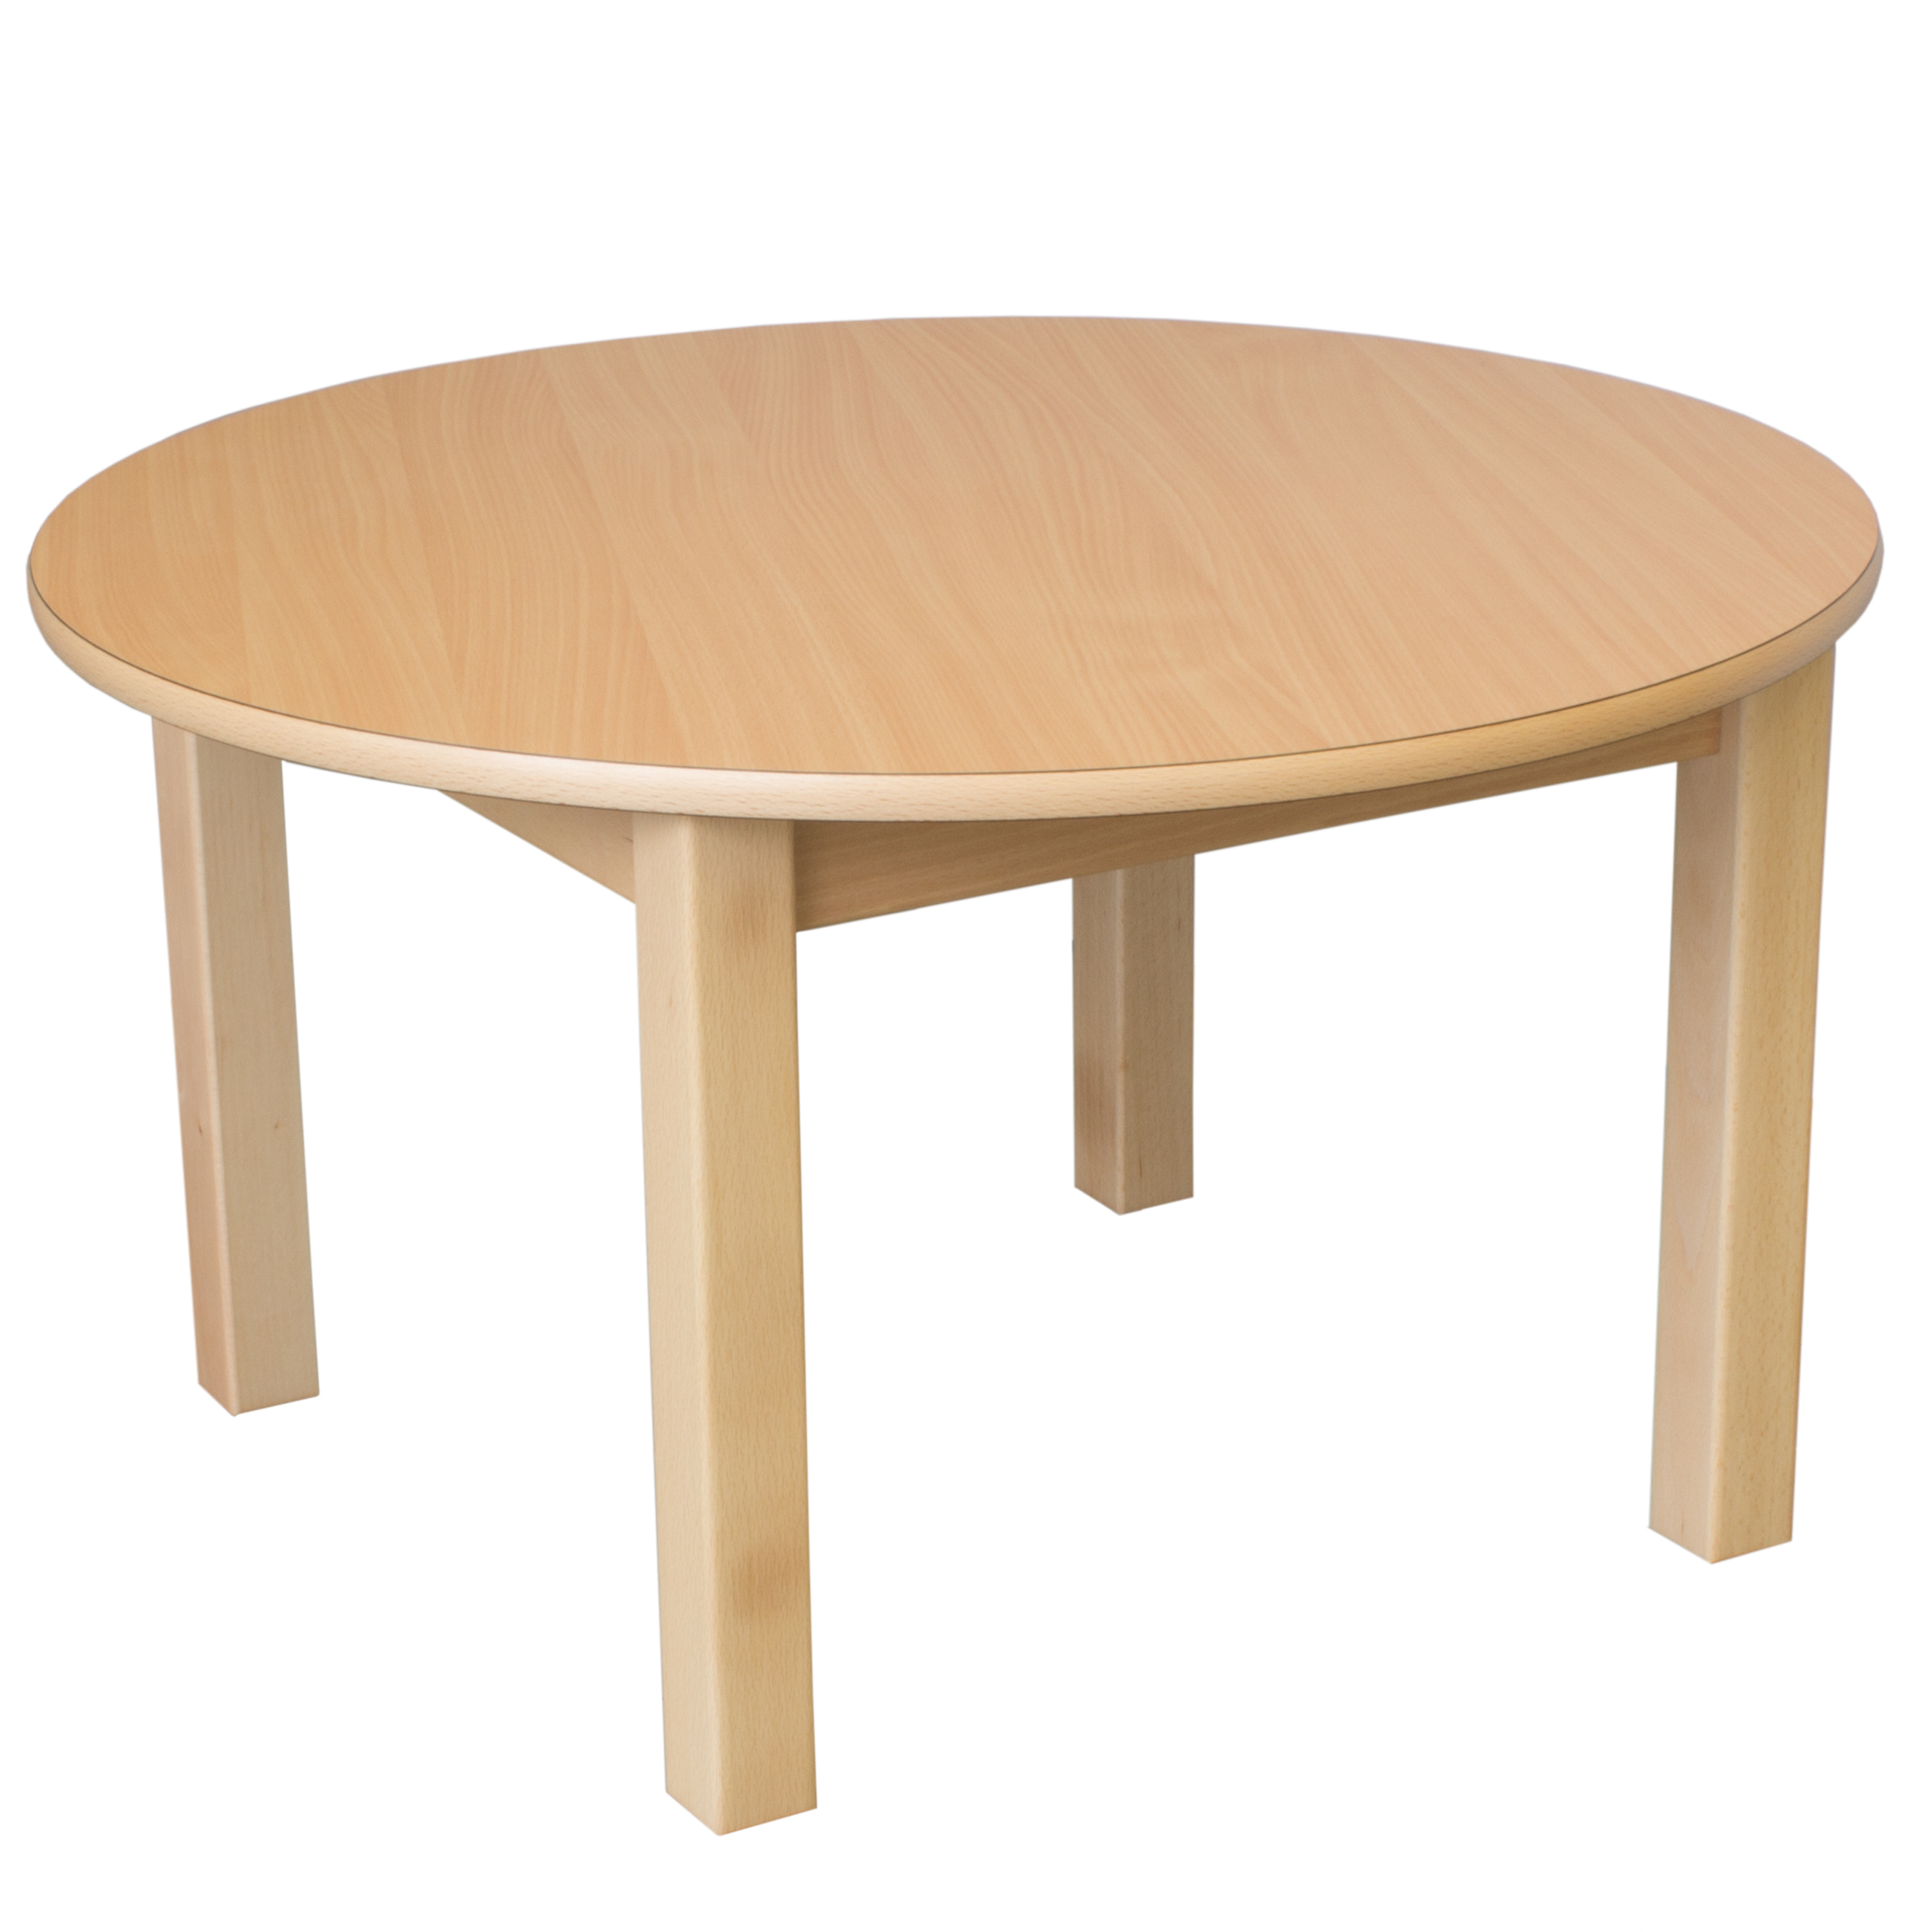 Runder Tisch, Durchmesser 120 cm, Tischhöhe 64 cm